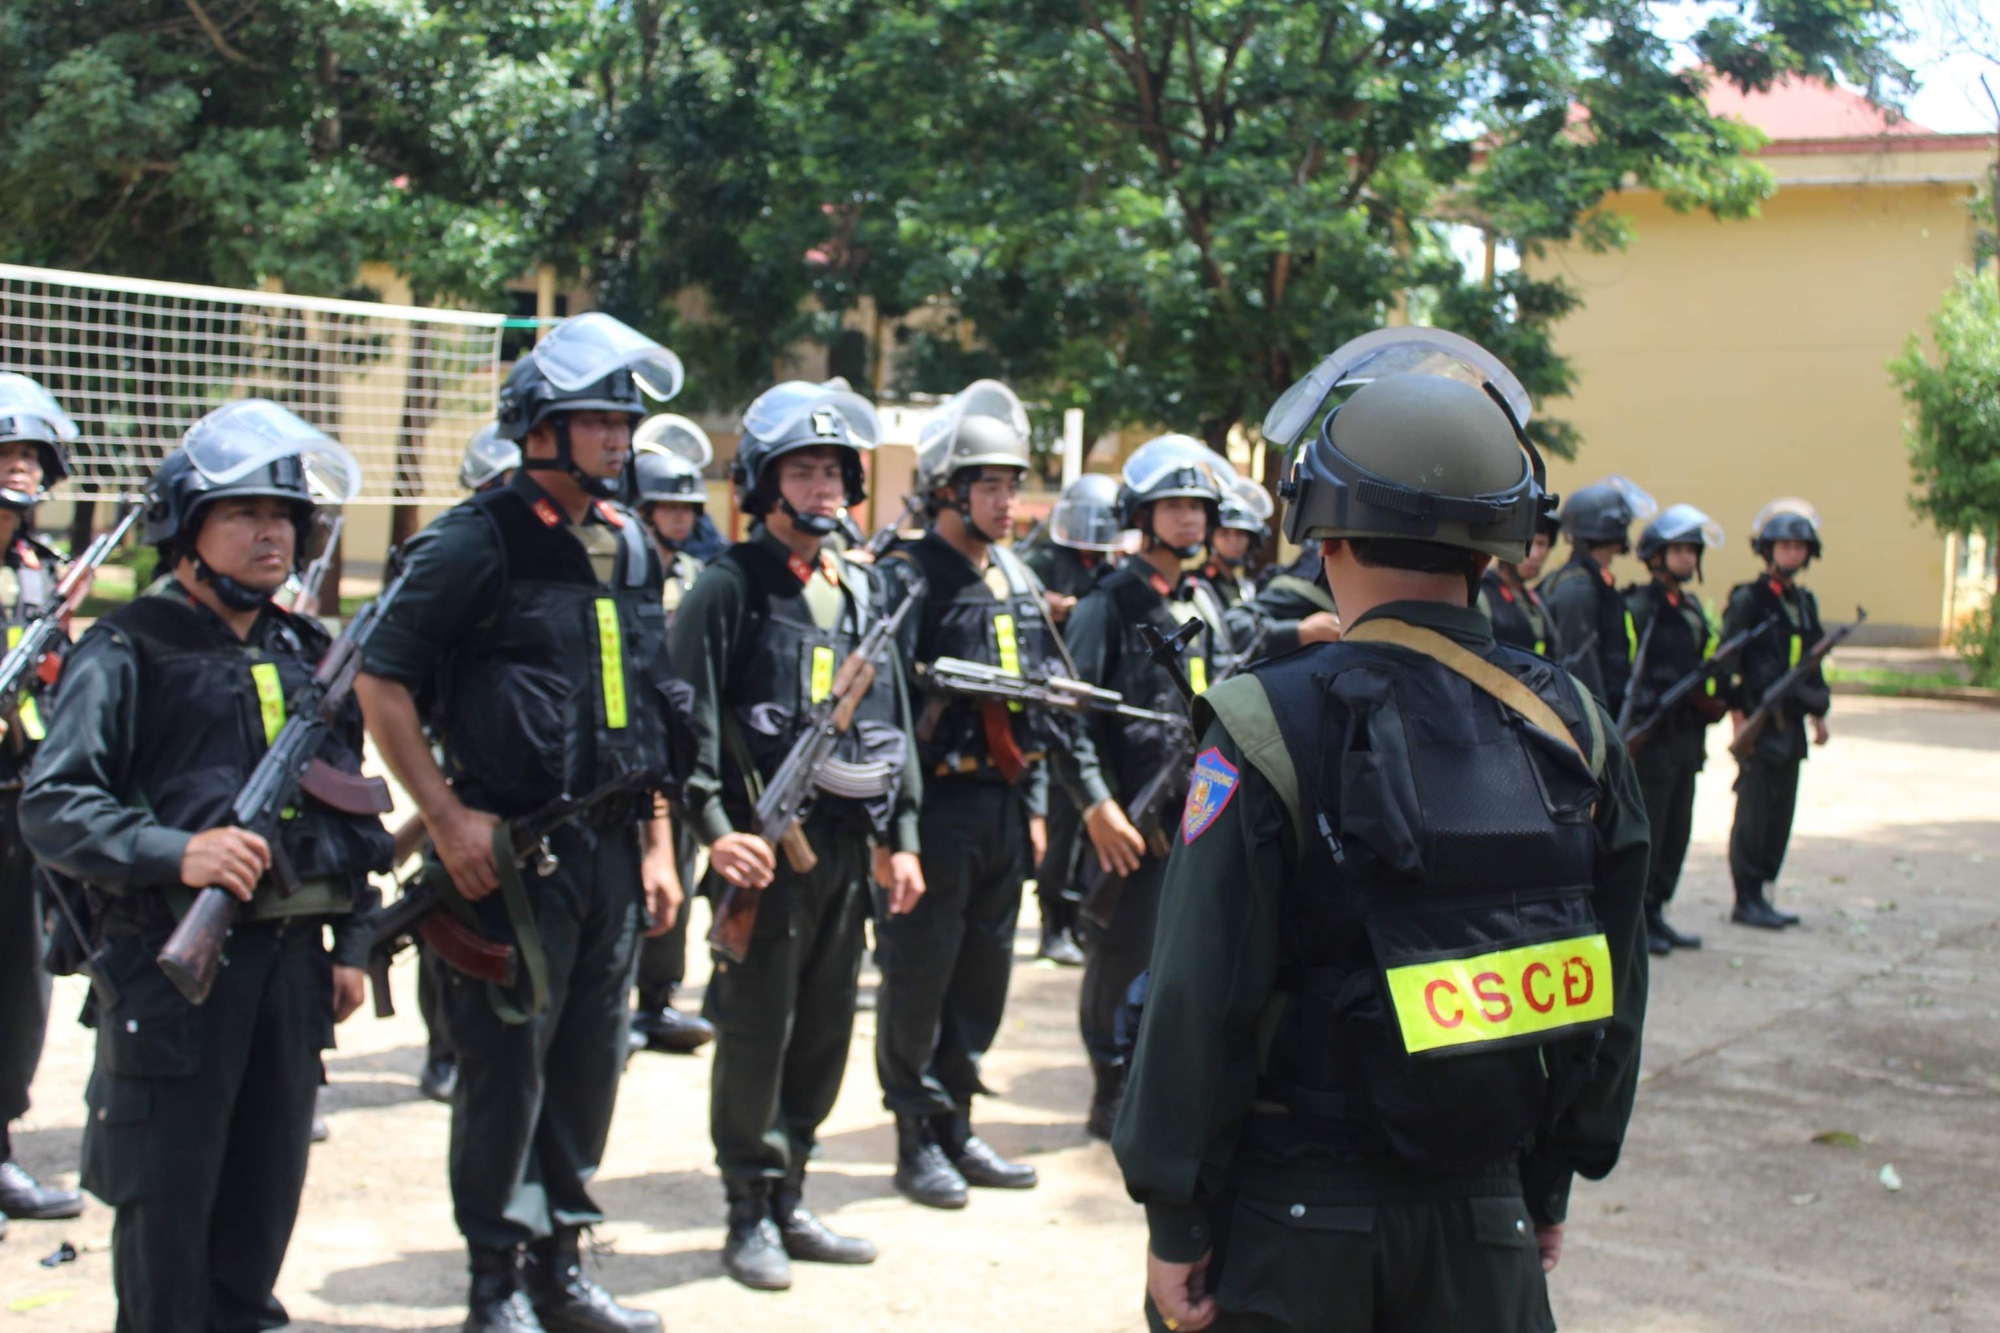 Ảnh: Cảnh sát cơ động, đặc nhiệm ngày đêm truy quét các đối tượng vụ tấn công bằng súng ở Đắk Lắk - Ảnh 3.